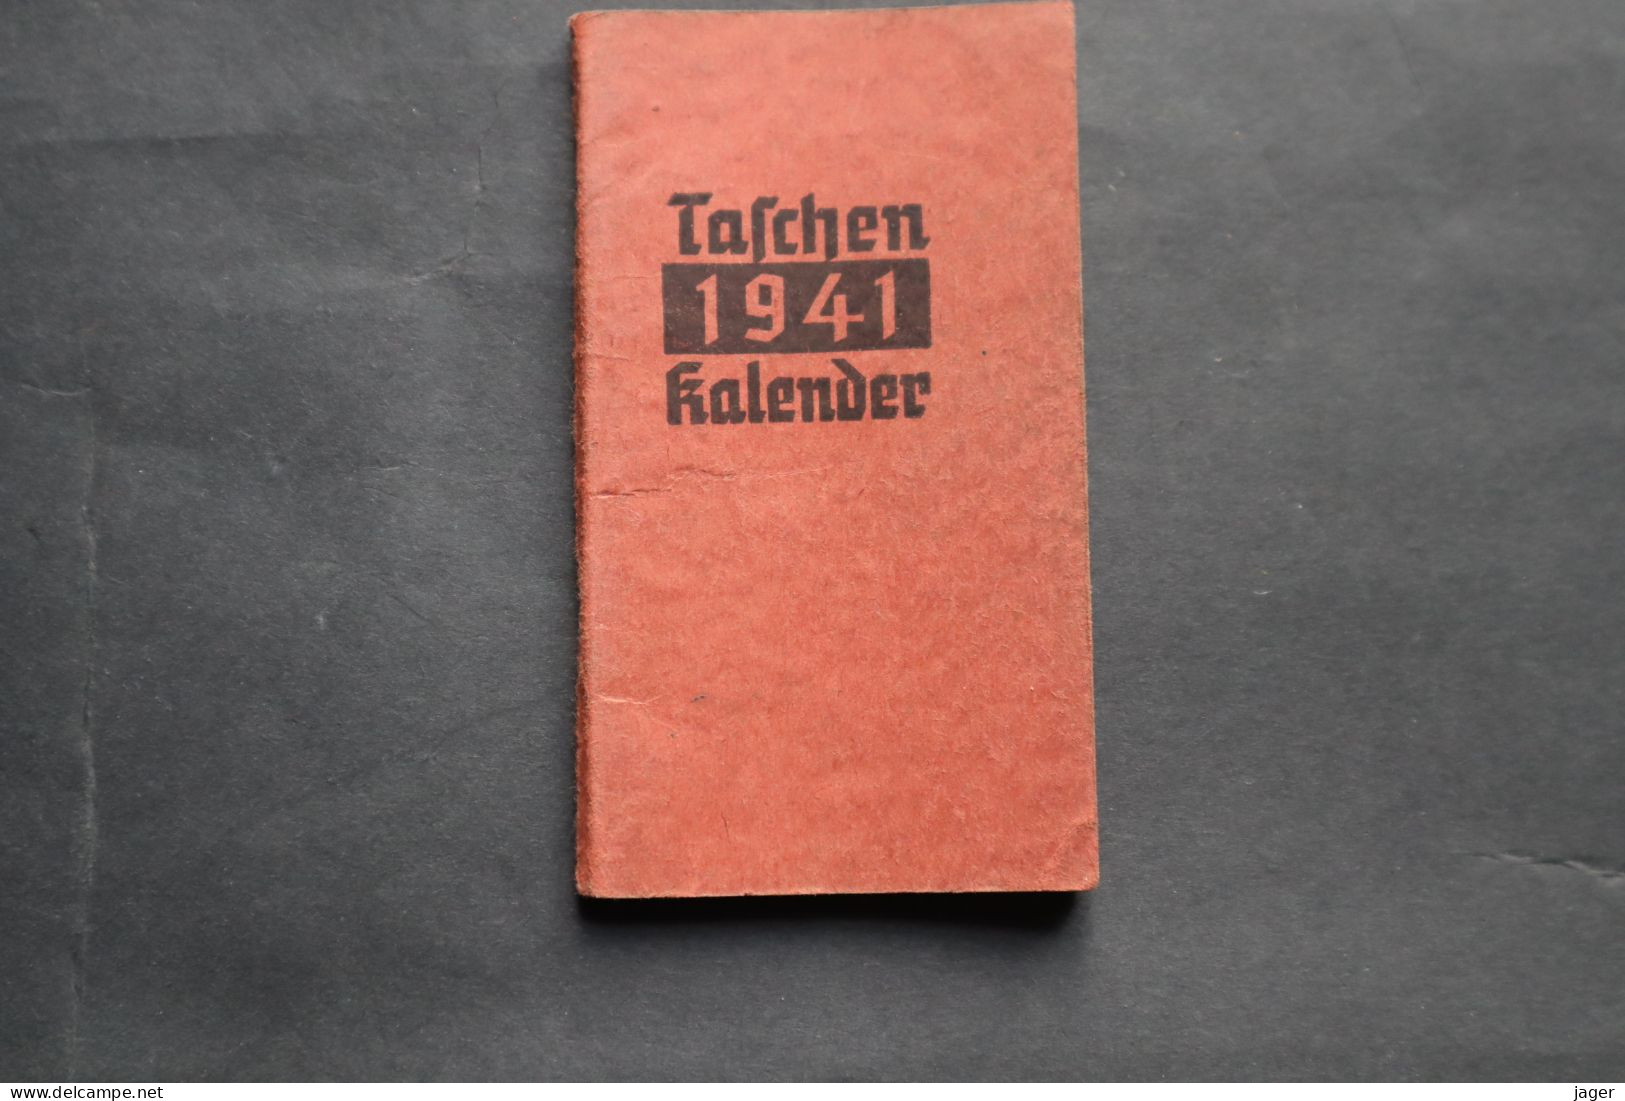 Taschen 1941 Kalender  Carnet D'un Prisonnier - 1939-45